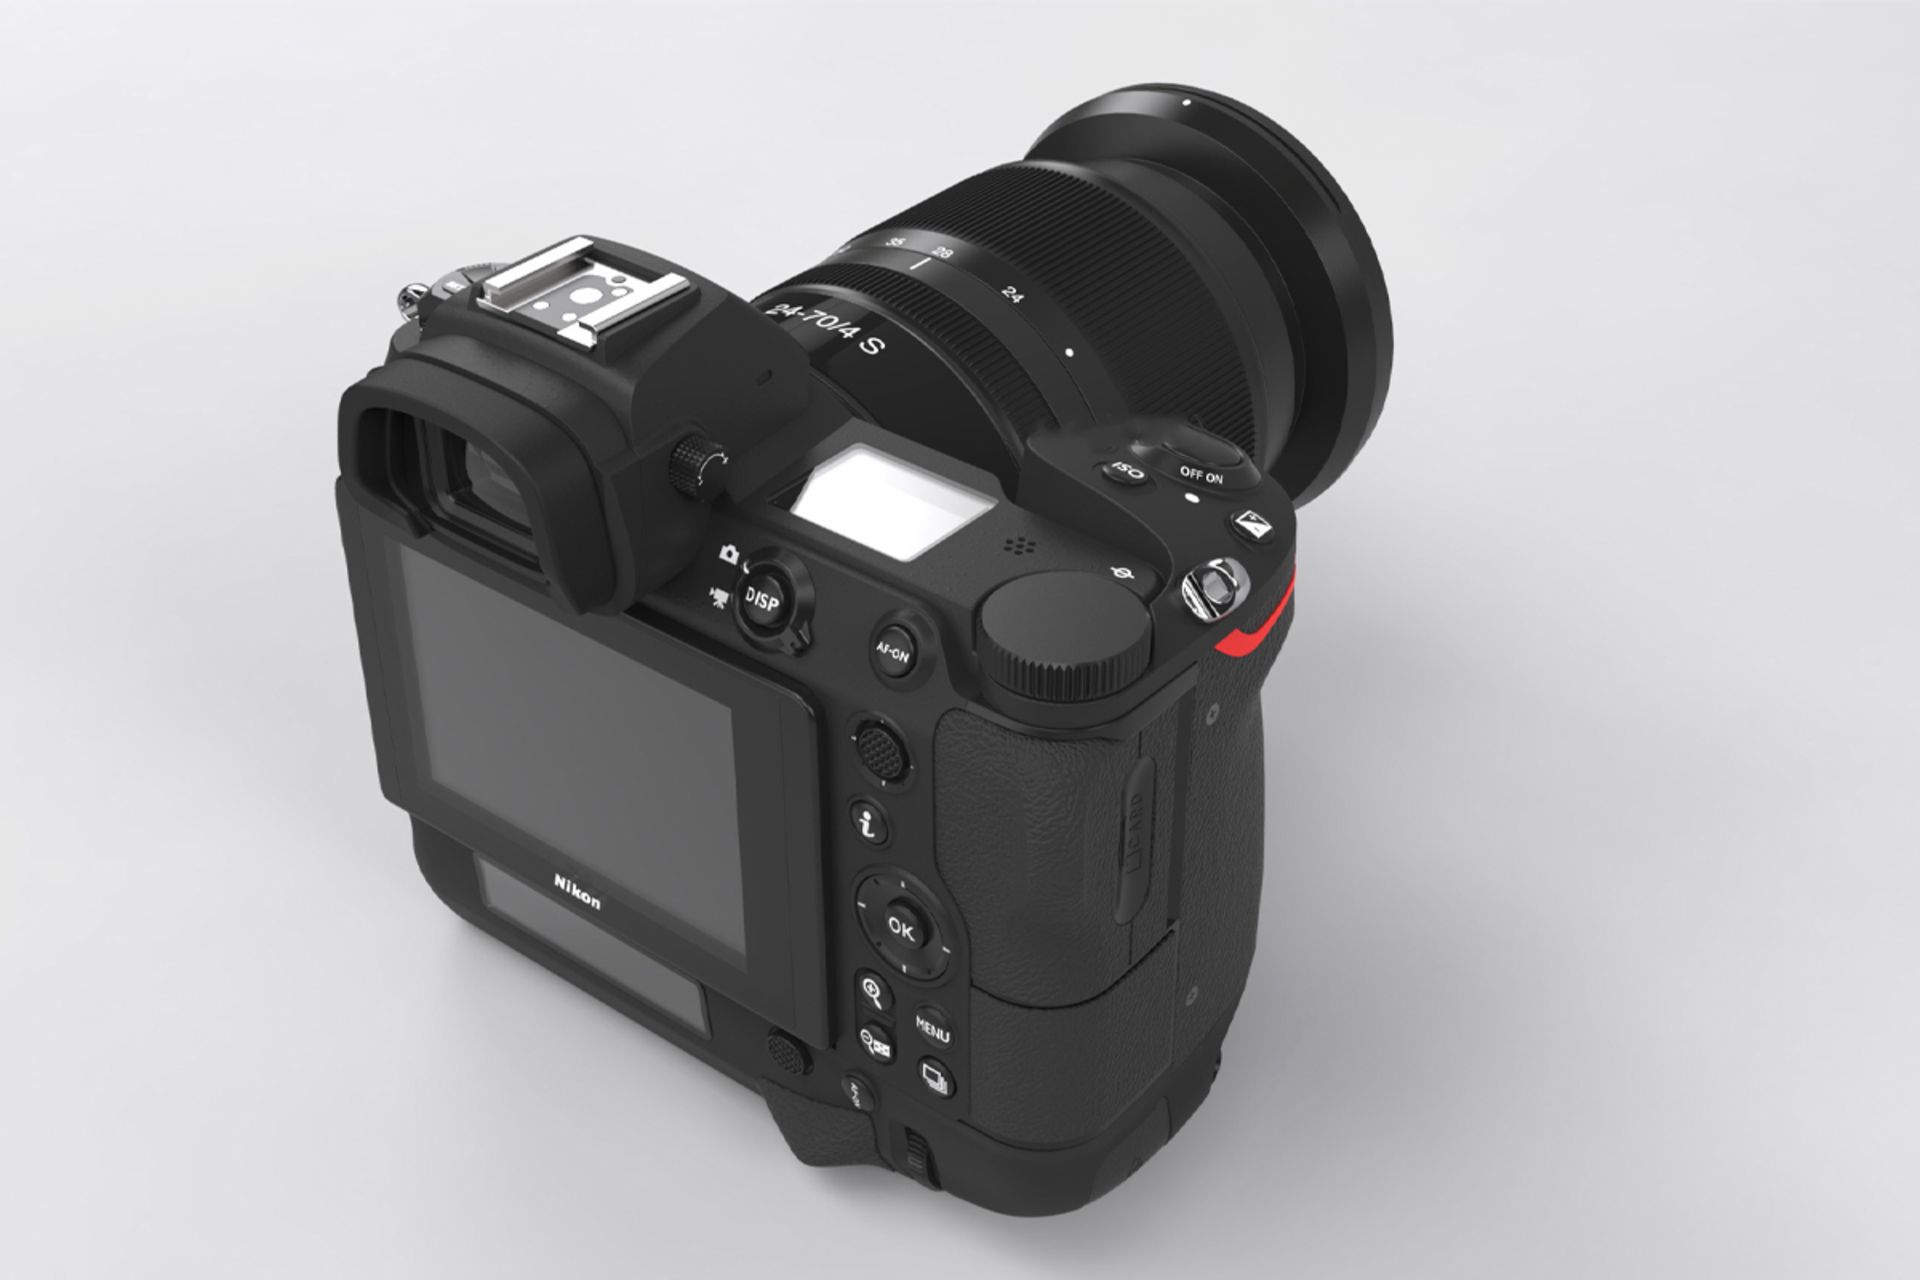 دوربین نیکون زد 9 / Nikon Z9 نمای پشت از بالا نمایشگر LCD و منظره یاب الکترونیکی و دکمه ها